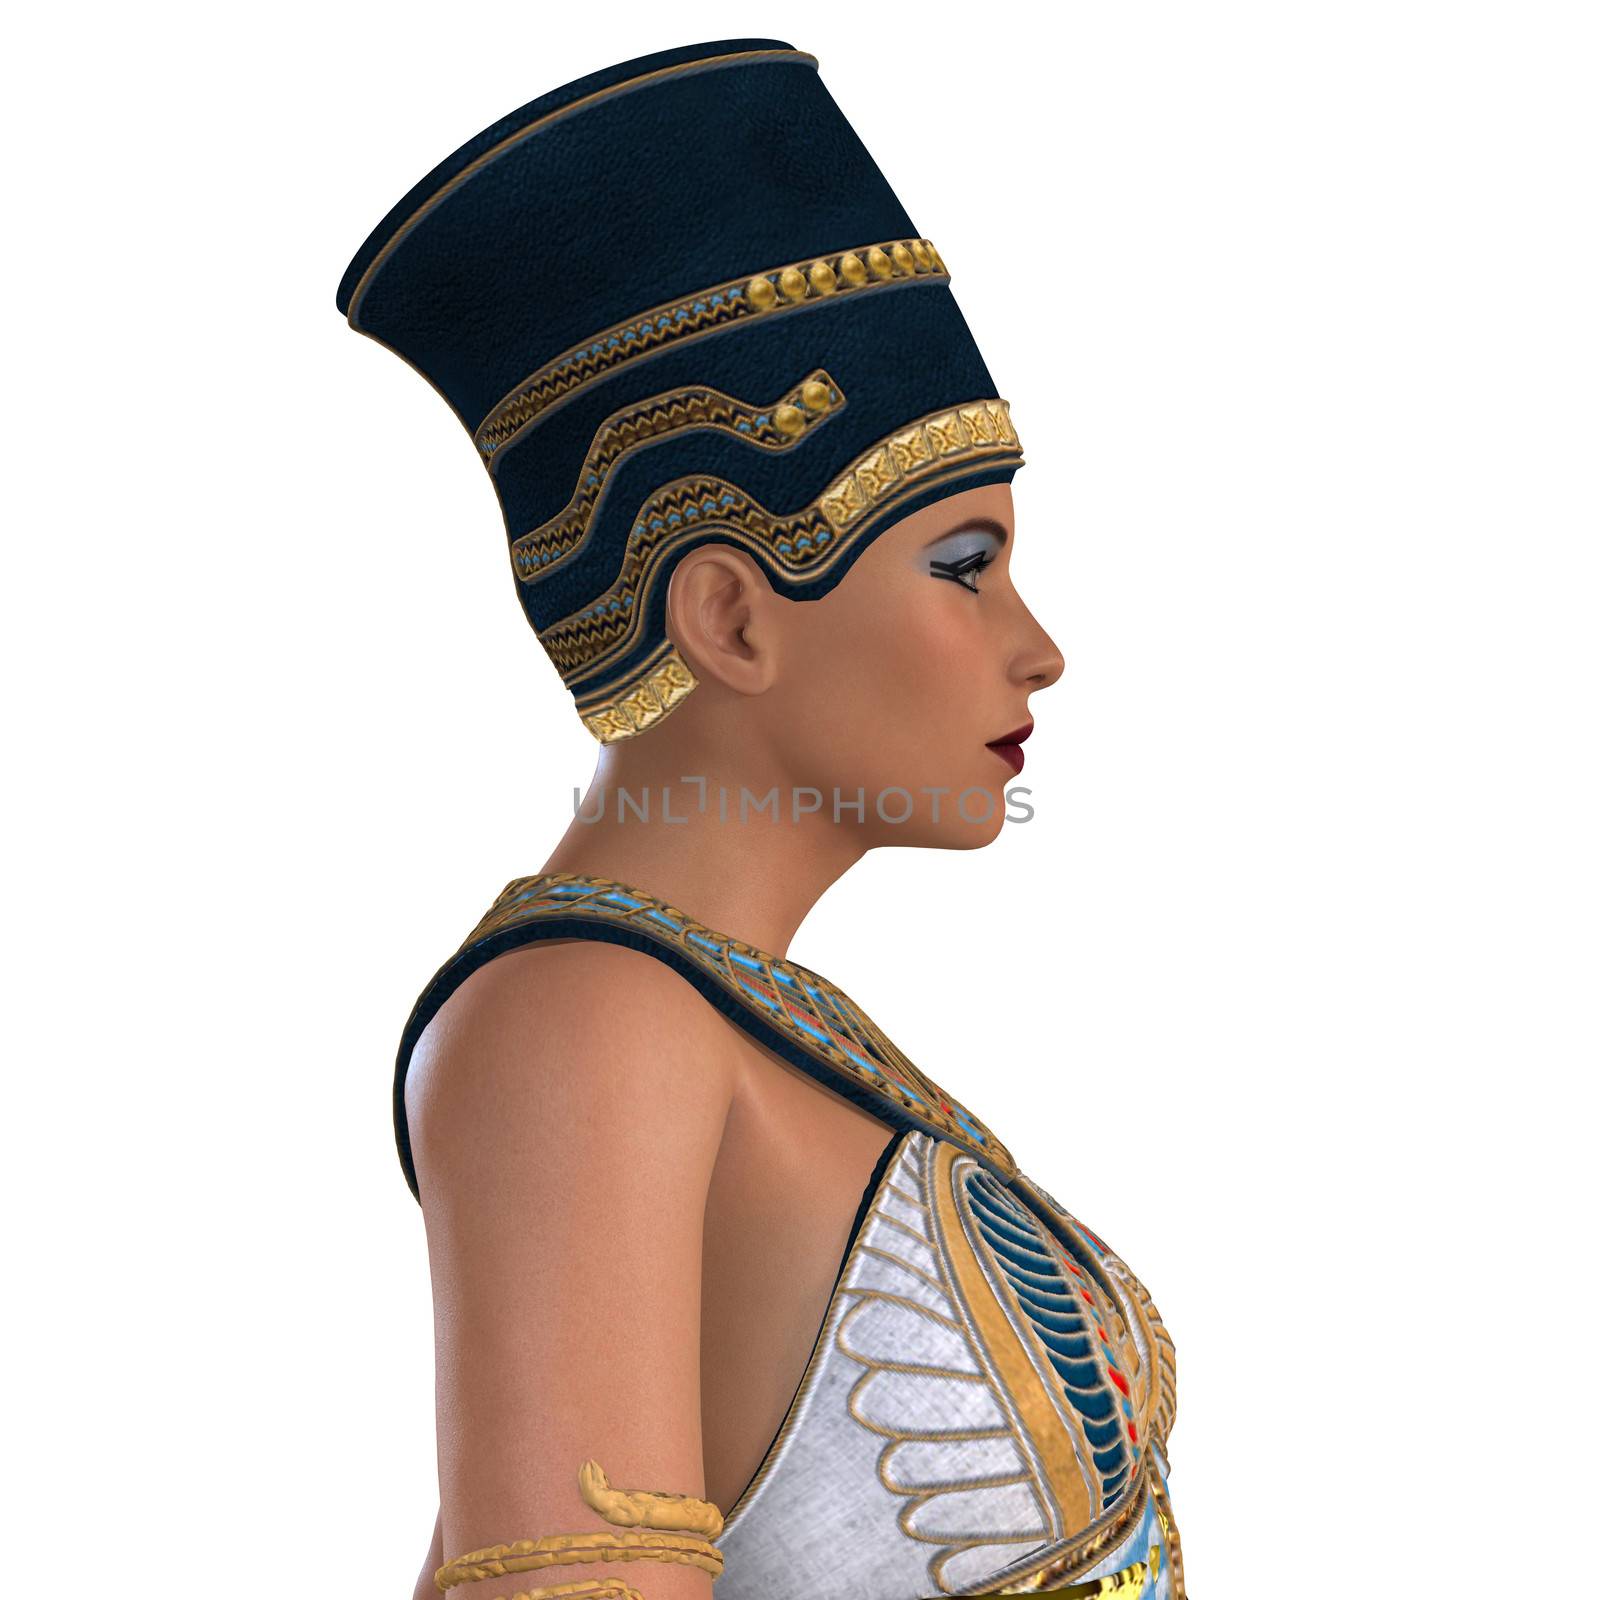 Egyptian Nefertiti Face by Catmando